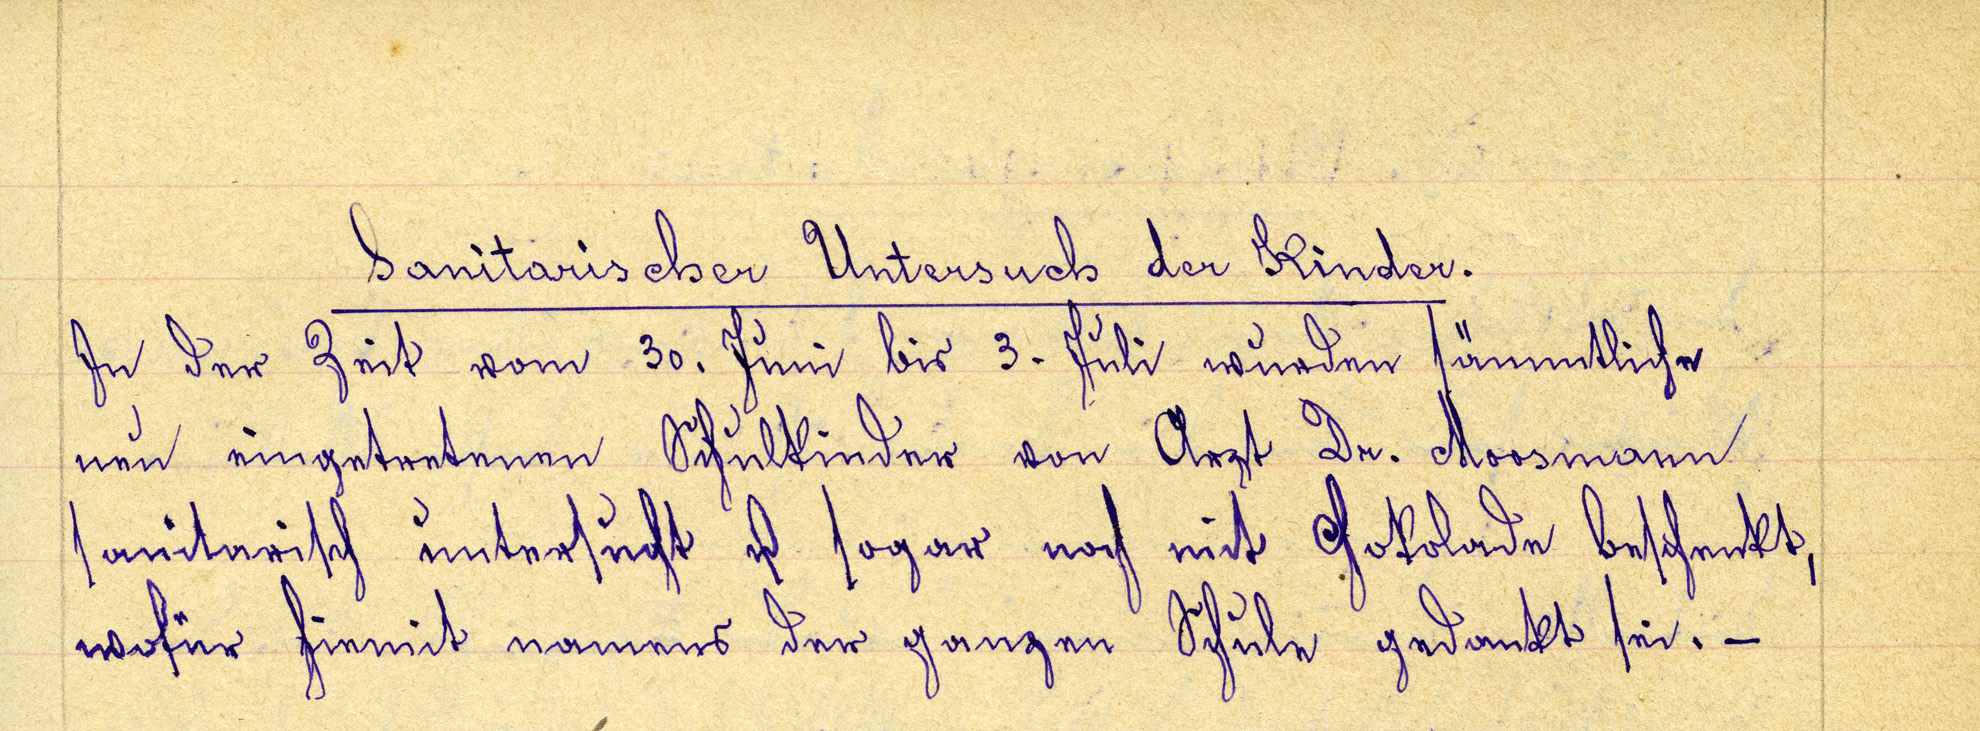 Der Schularzt Dr. Moosmann beschenkte die Reussbühler Schüler nach dem »sanitarischen Untersuch» im Jahr 1905 mit Schokolade.